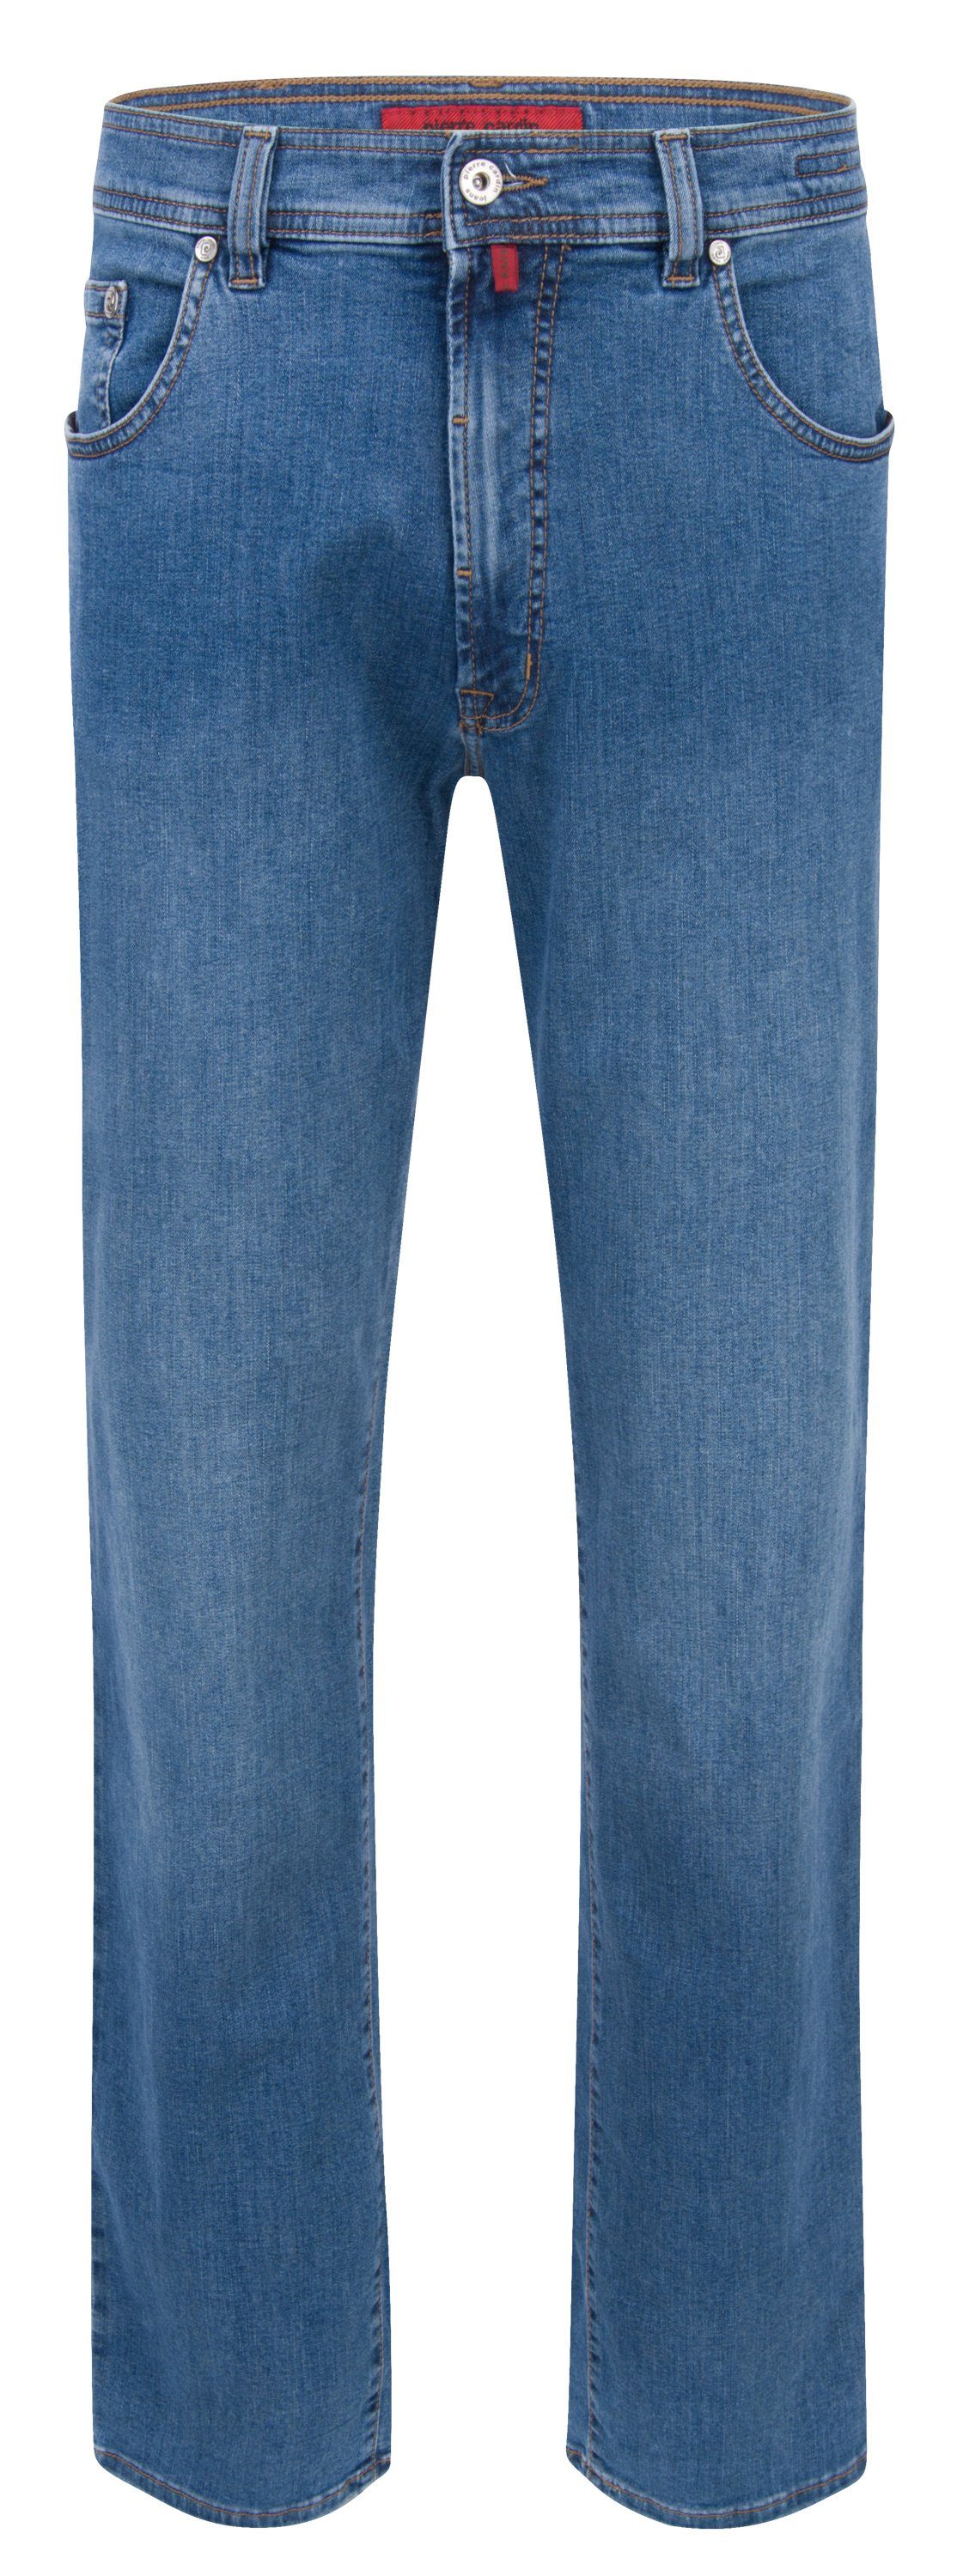 Pierre Cardin 5-Pocket-Jeans PIERRE CARDIN DIJON mid blue used 3231 7301.06